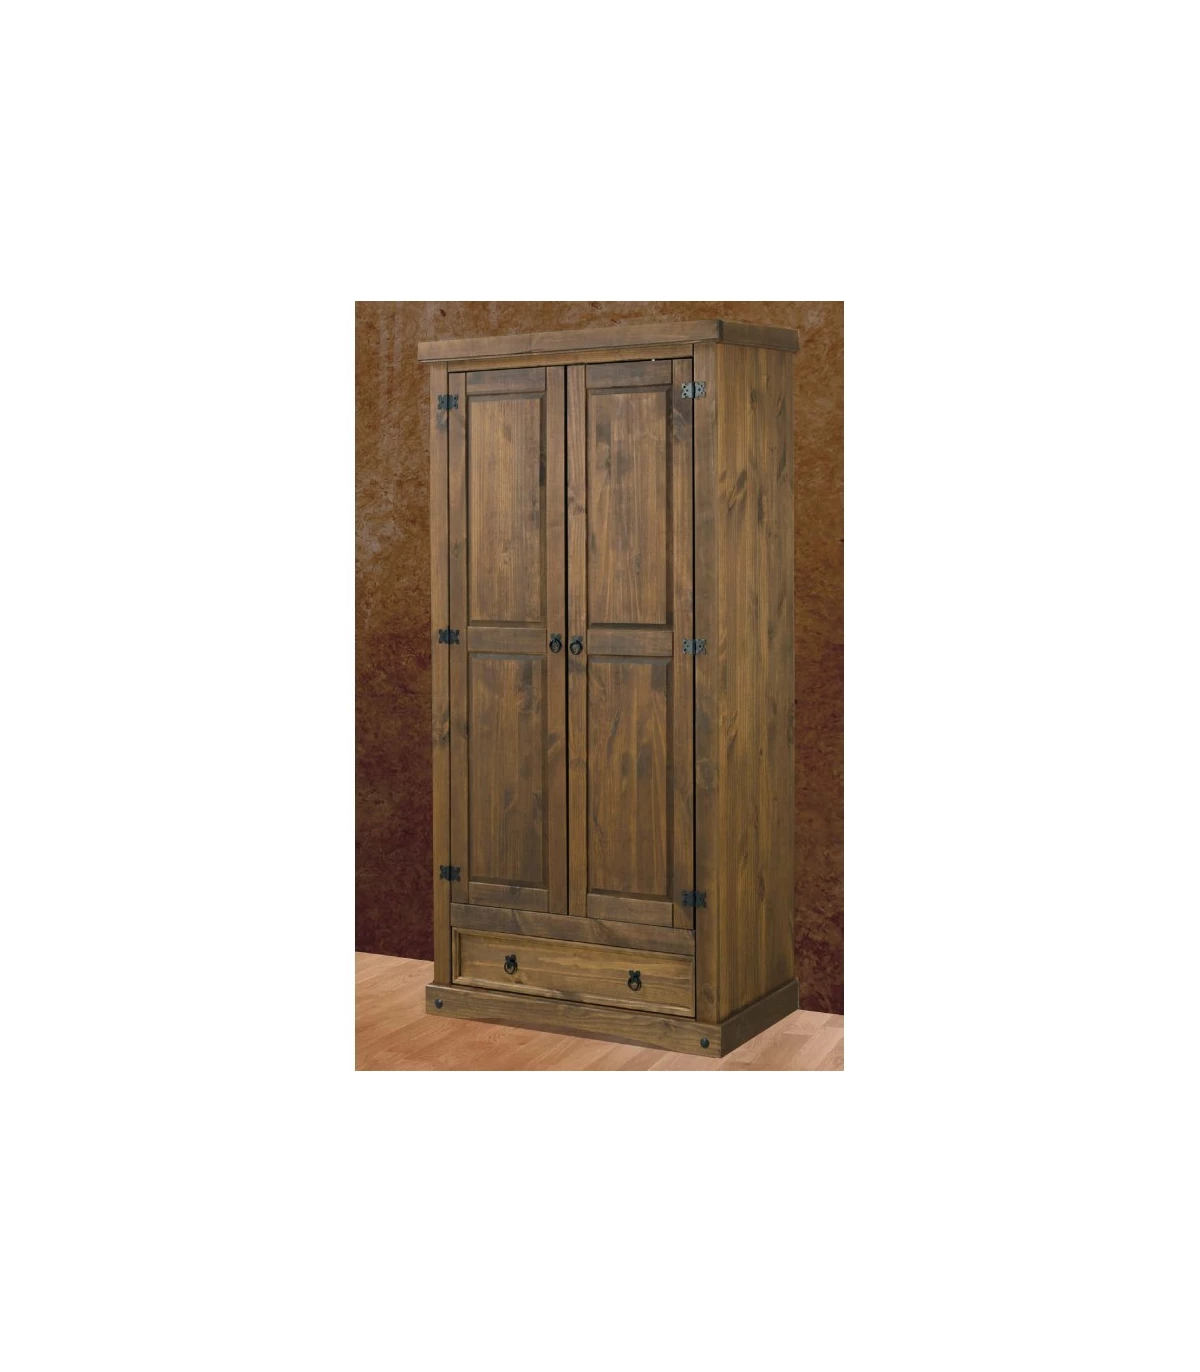 Armario rustico 1 puerta y dos cajones en madera maciza de pino